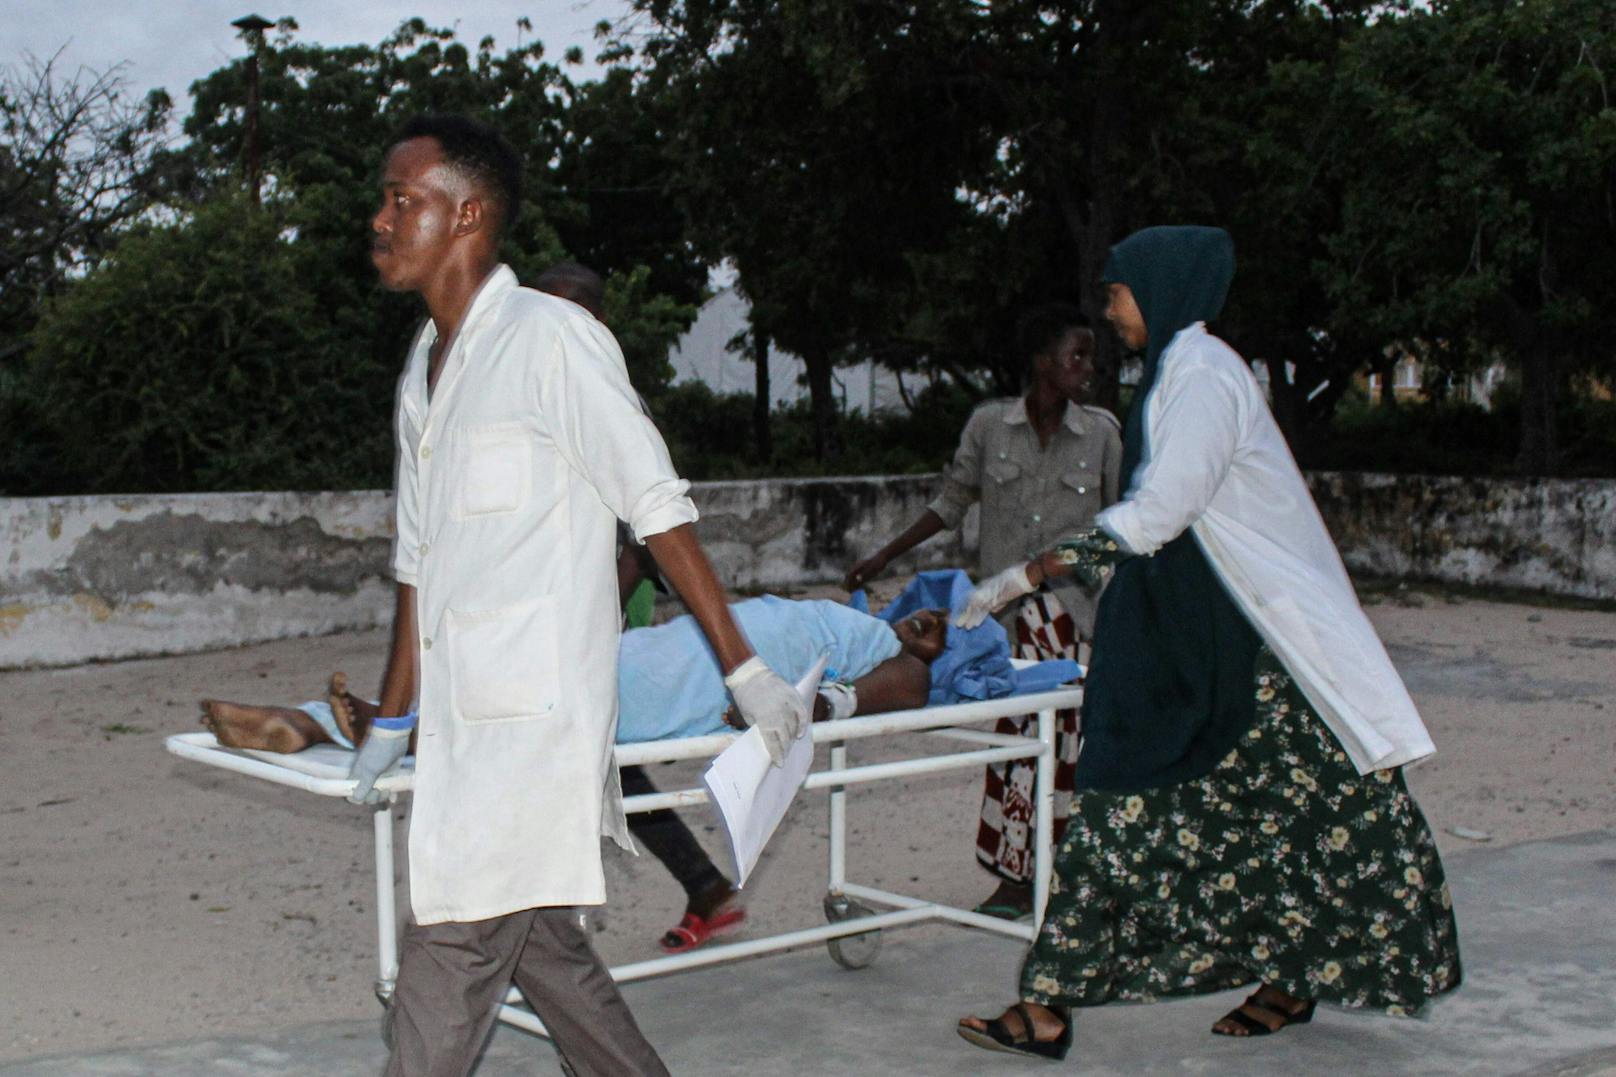 Terrorangriff auf Hotel in Somalia fordert 17 Tote